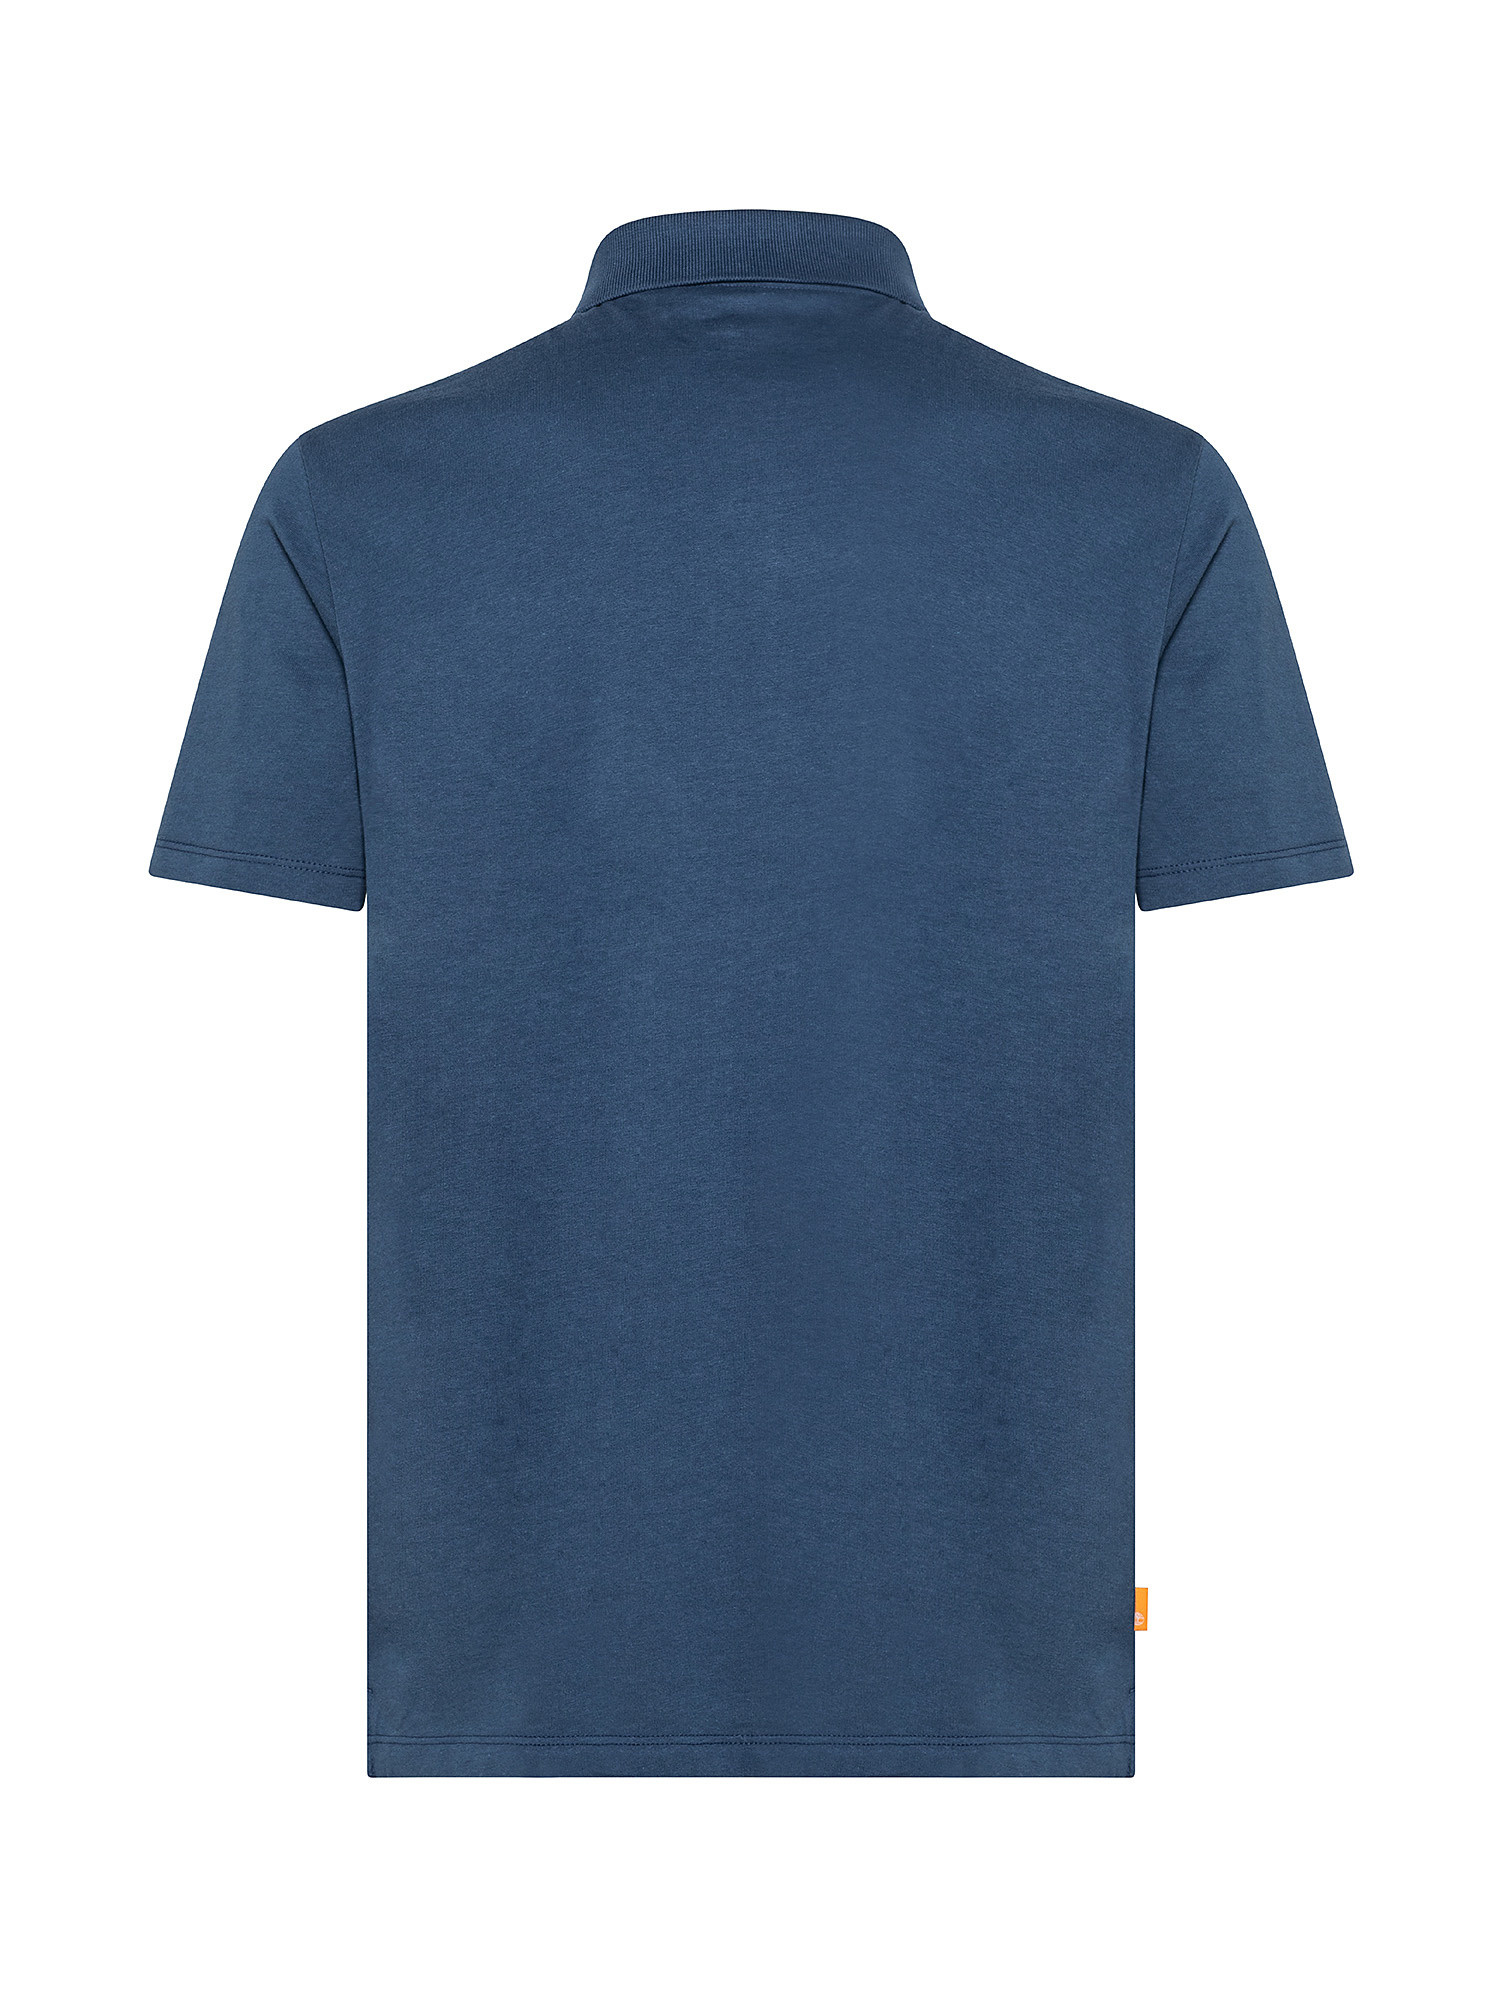 Men's Outdoor Heritage EK + Polo Shirt, Blue, large image number 1